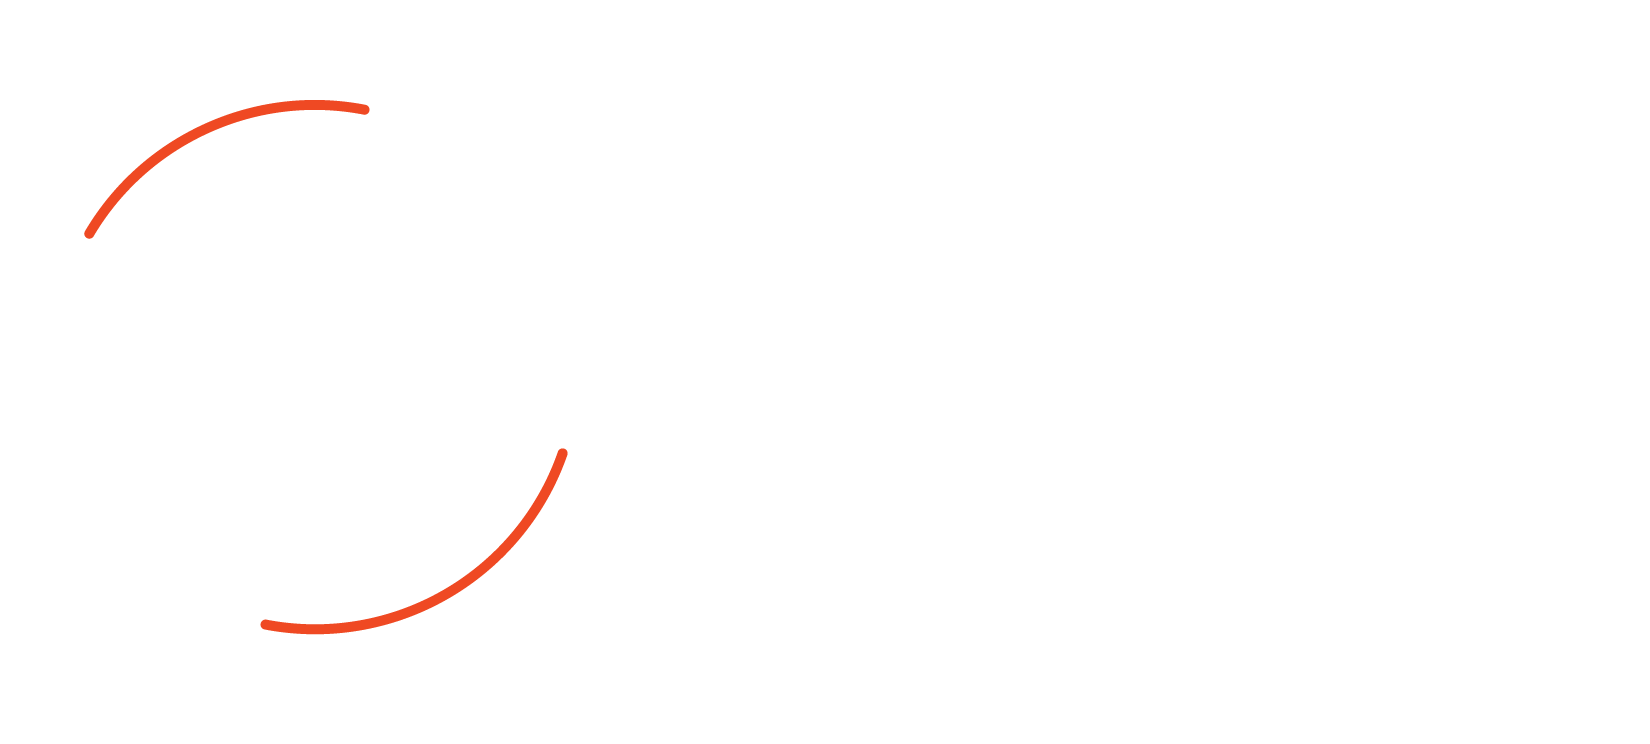 Spyglass Realty